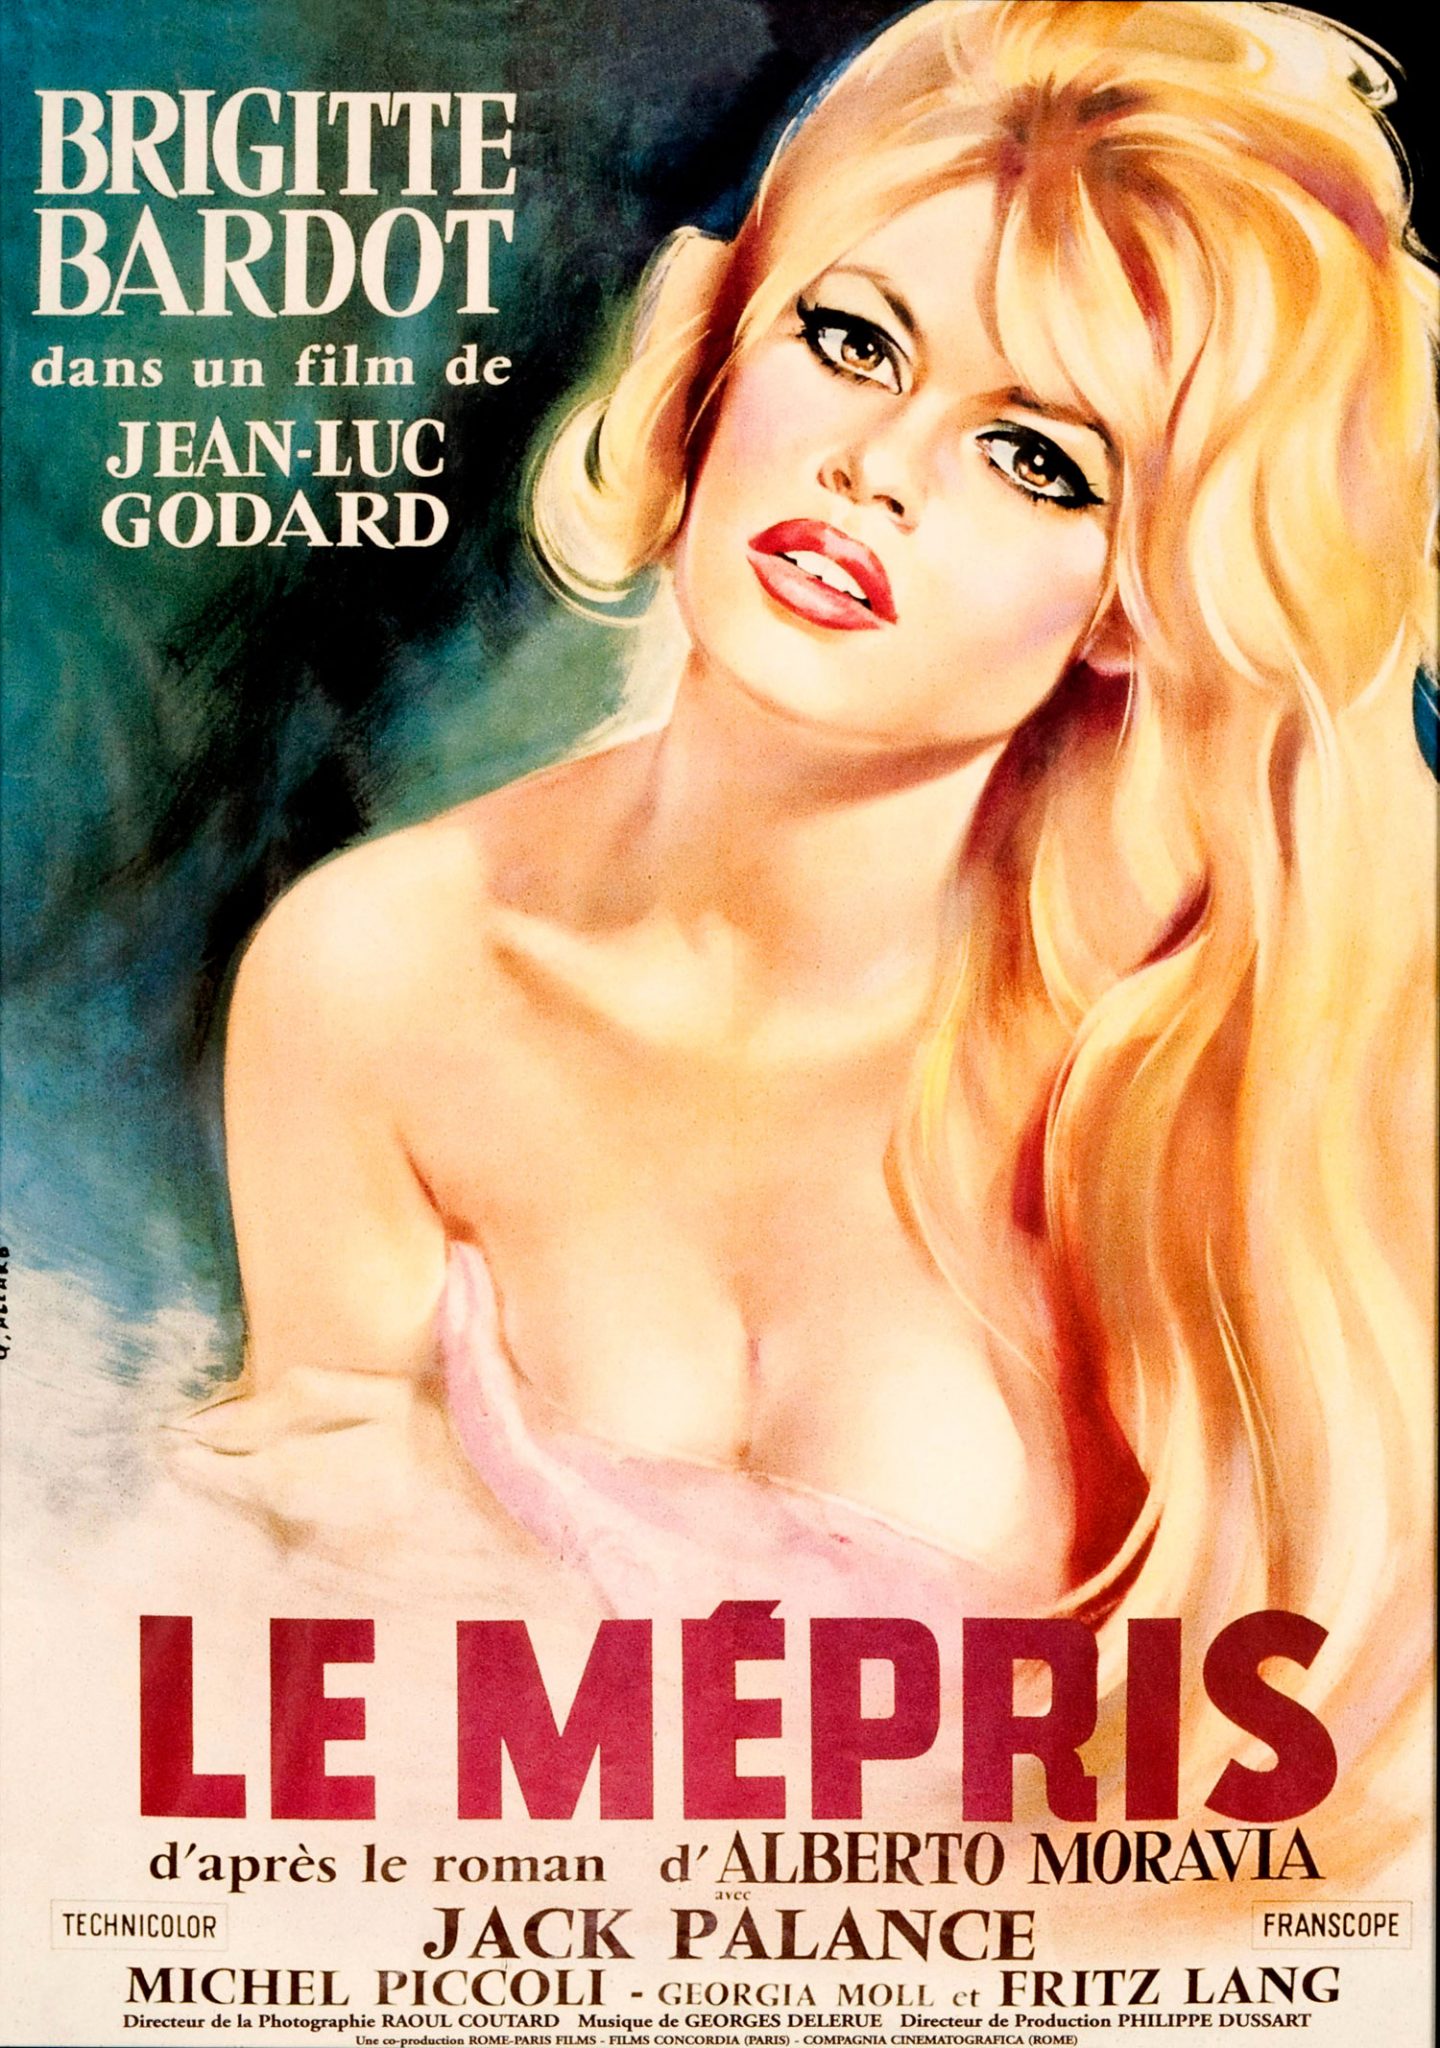 Il Disprezzo di Jean-Luc Godard è tornato al cinema. Finalmente in Italia la versione originale